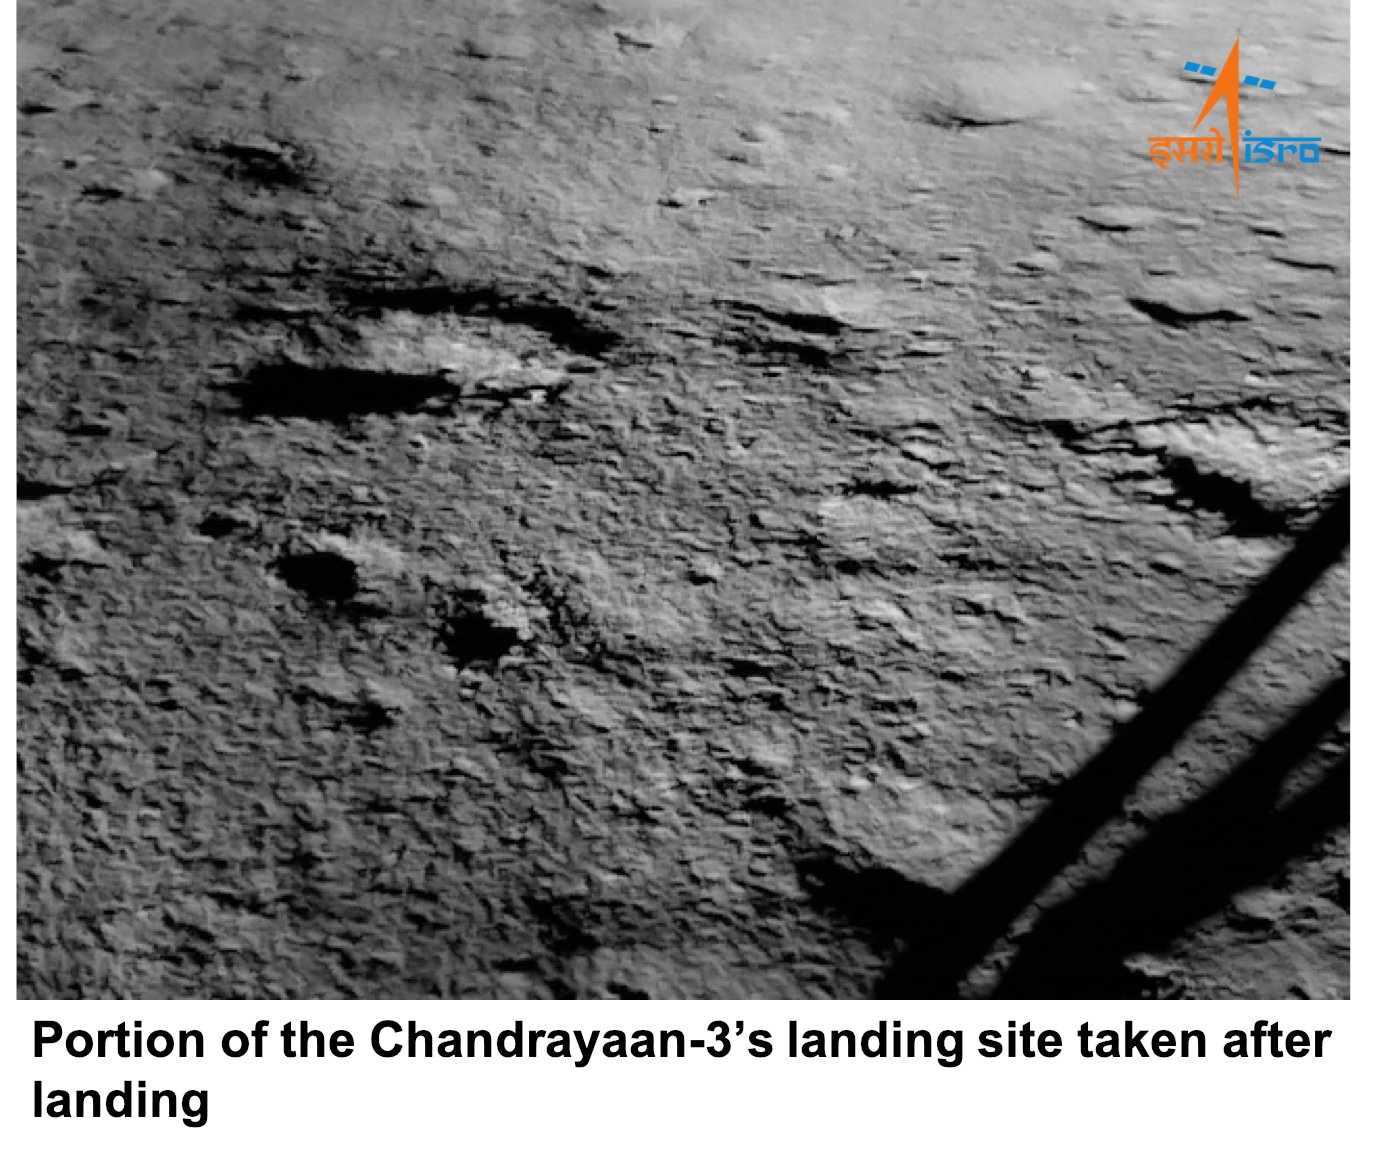 Первое фото Луны индийской миссии